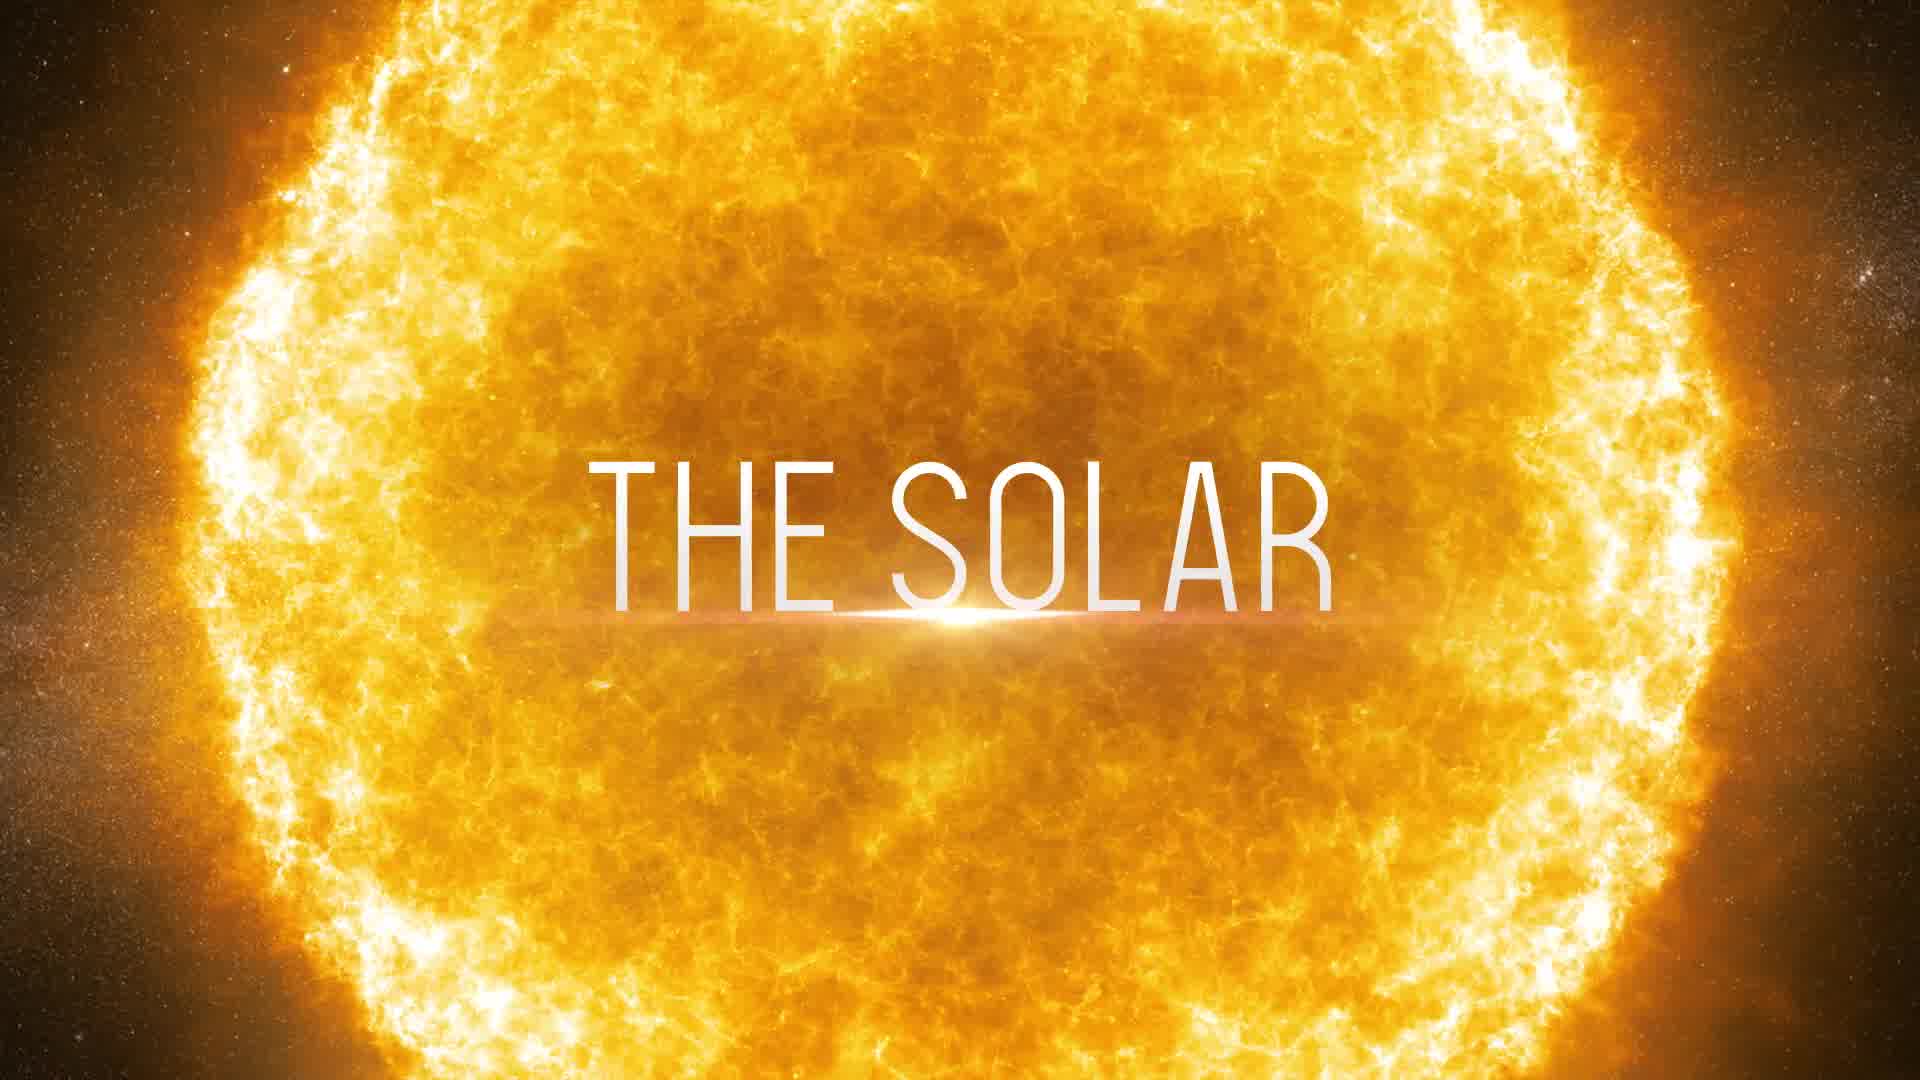 The Solar Cinematic Trailer Premiere Pro Videohive 24577336 Premiere Pro Image 10